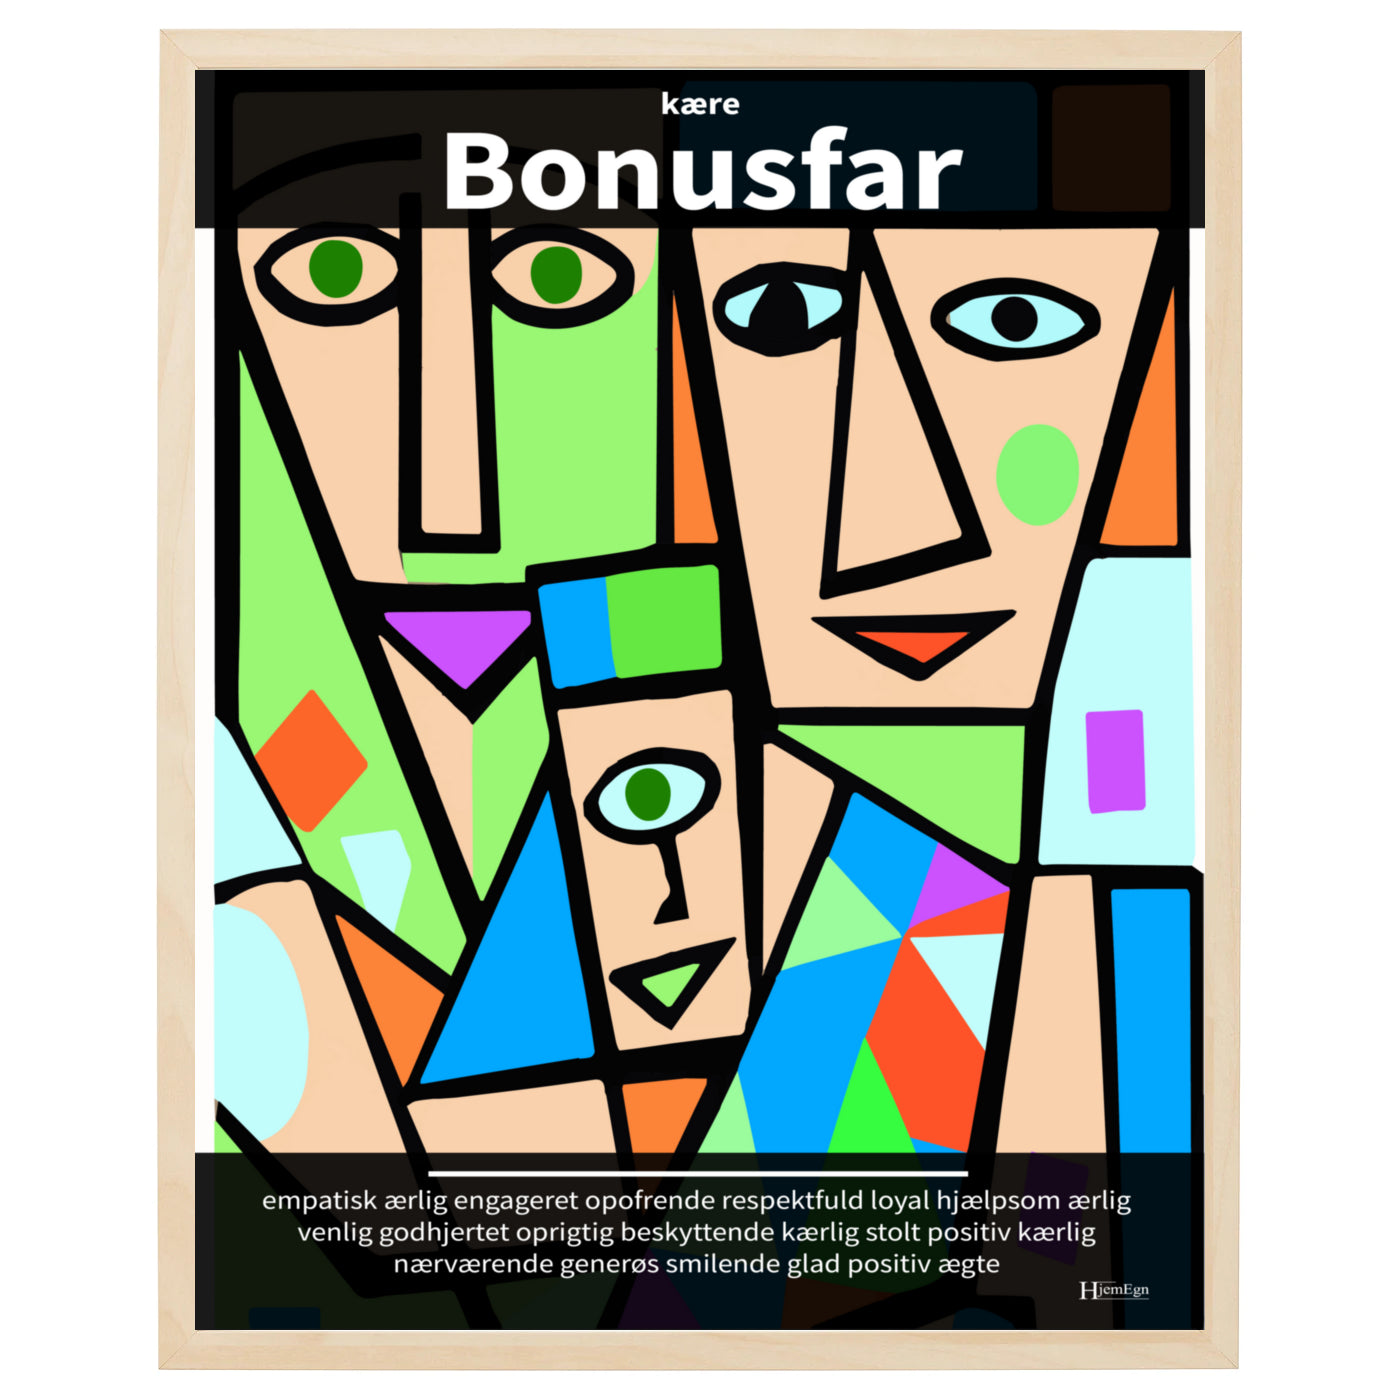 bonusfar plakat i farver, gengivende en dagplejer i abstrakt og moderne udtryk og med opmuntrende citater og ord om en bonusfar